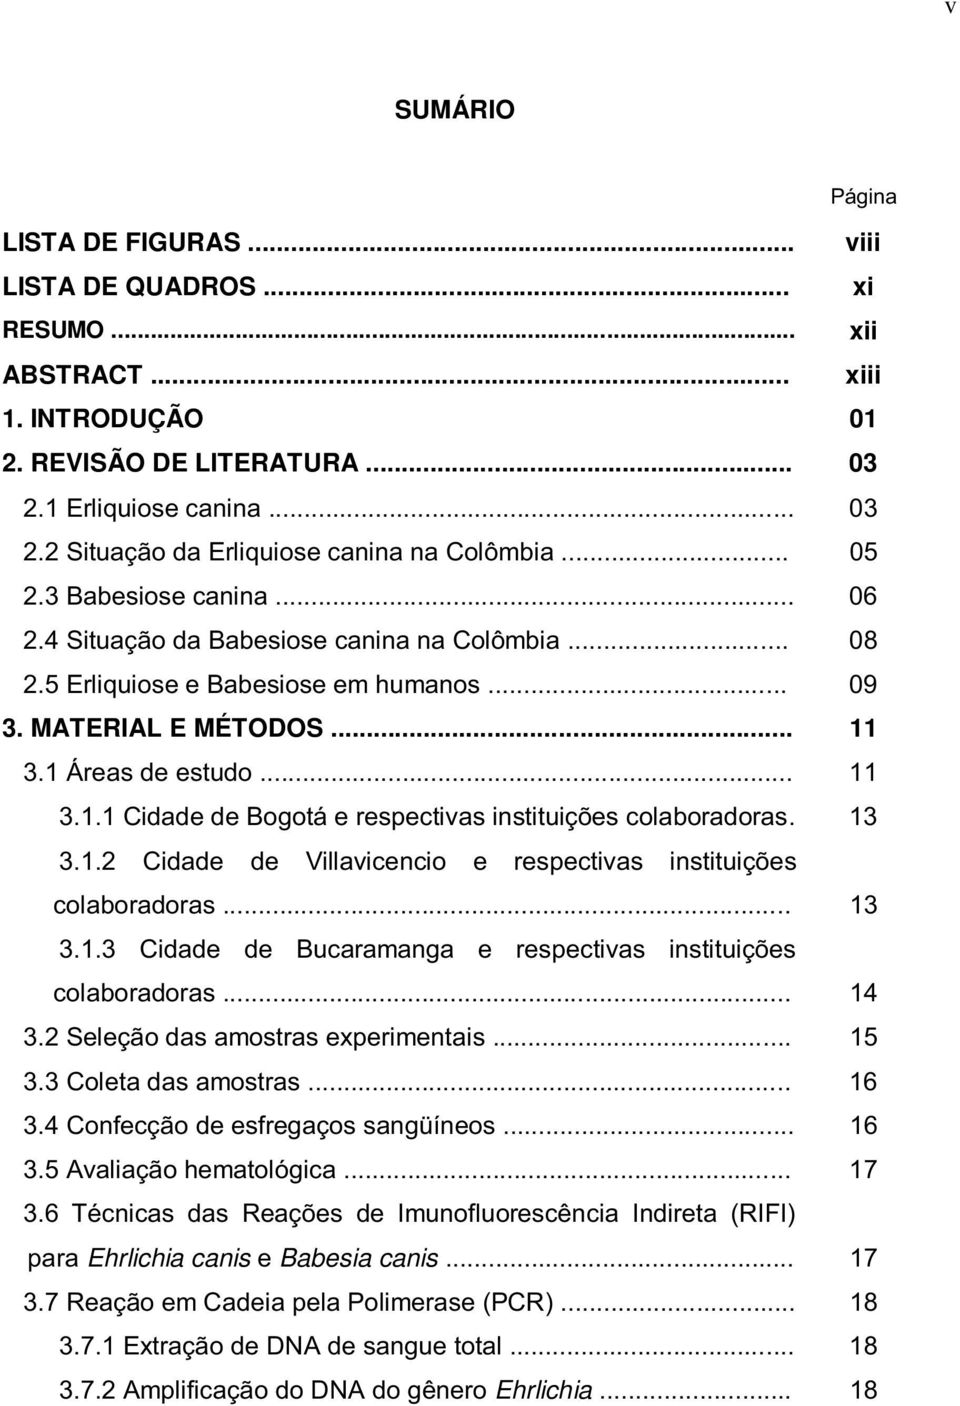 3.1 Áreas de estudo... 11 3.1.1 Cidade de Bogotá e respectivas instituições colaboradoras. 13 3.1.2 Cidade de Villavicencio e respectivas instituições colaboradoras... 13 3.1.3 Cidade de Bucaramanga e respectivas instituições colaboradoras.